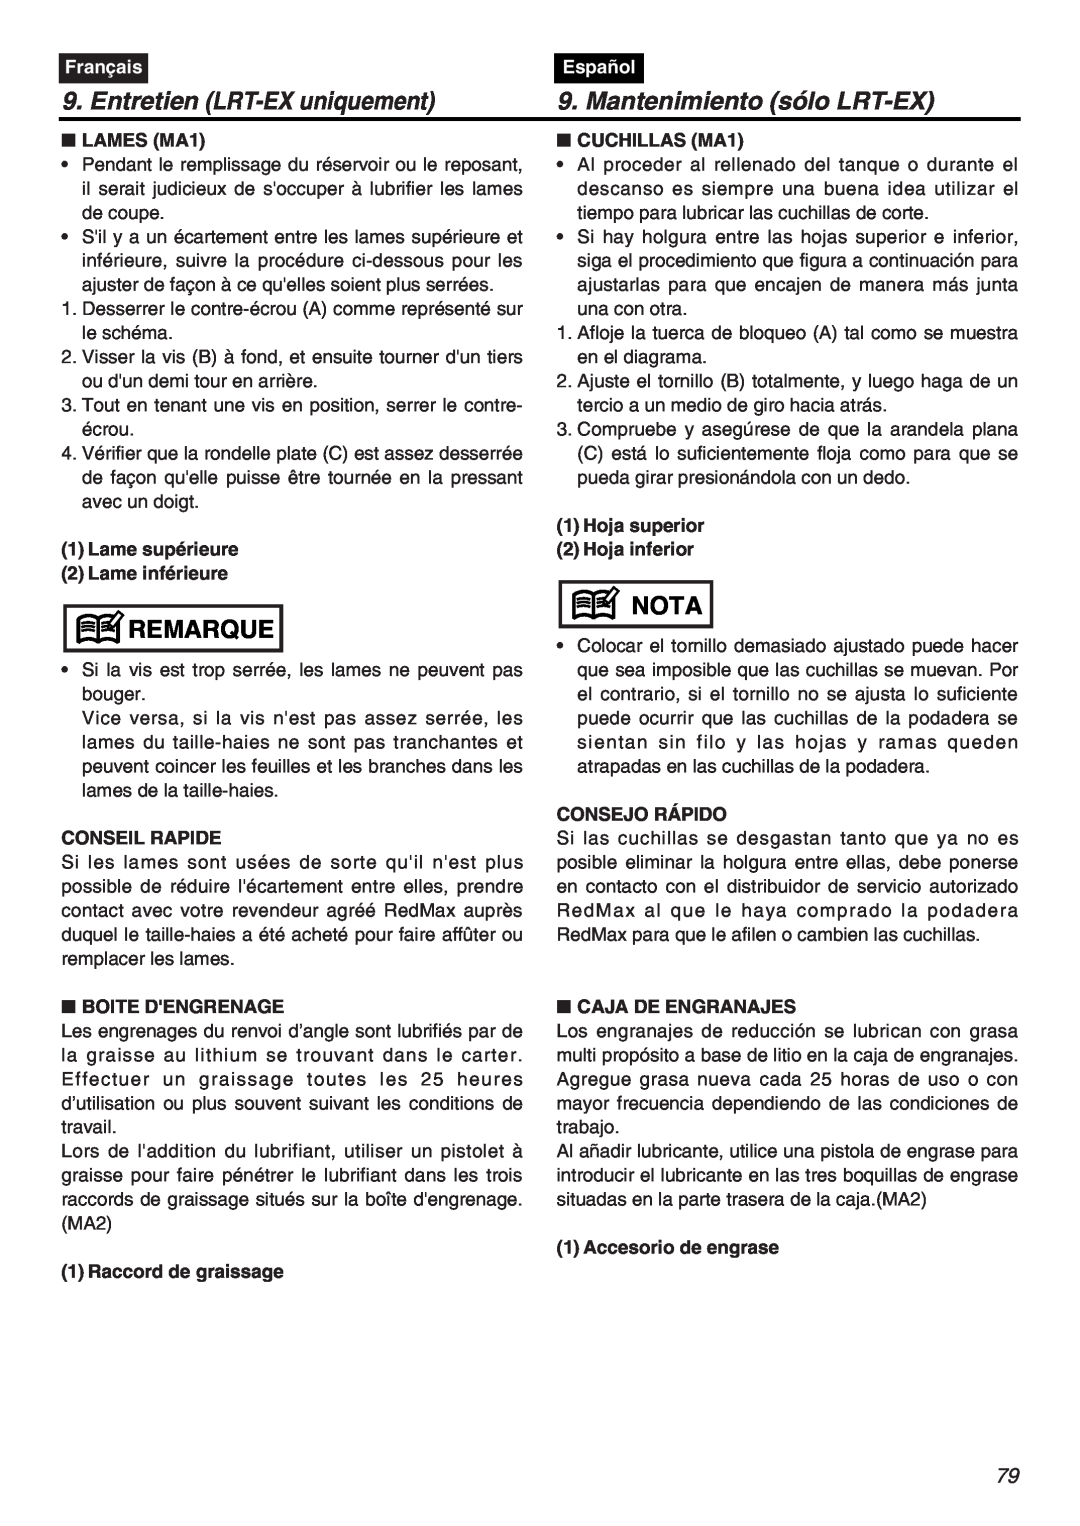 RedMax EXZ2401S-PH manual Entretien LRT-EX uniquement, Mantenimiento sólo LRT-EX, Remarque, Nota, Français, Español 